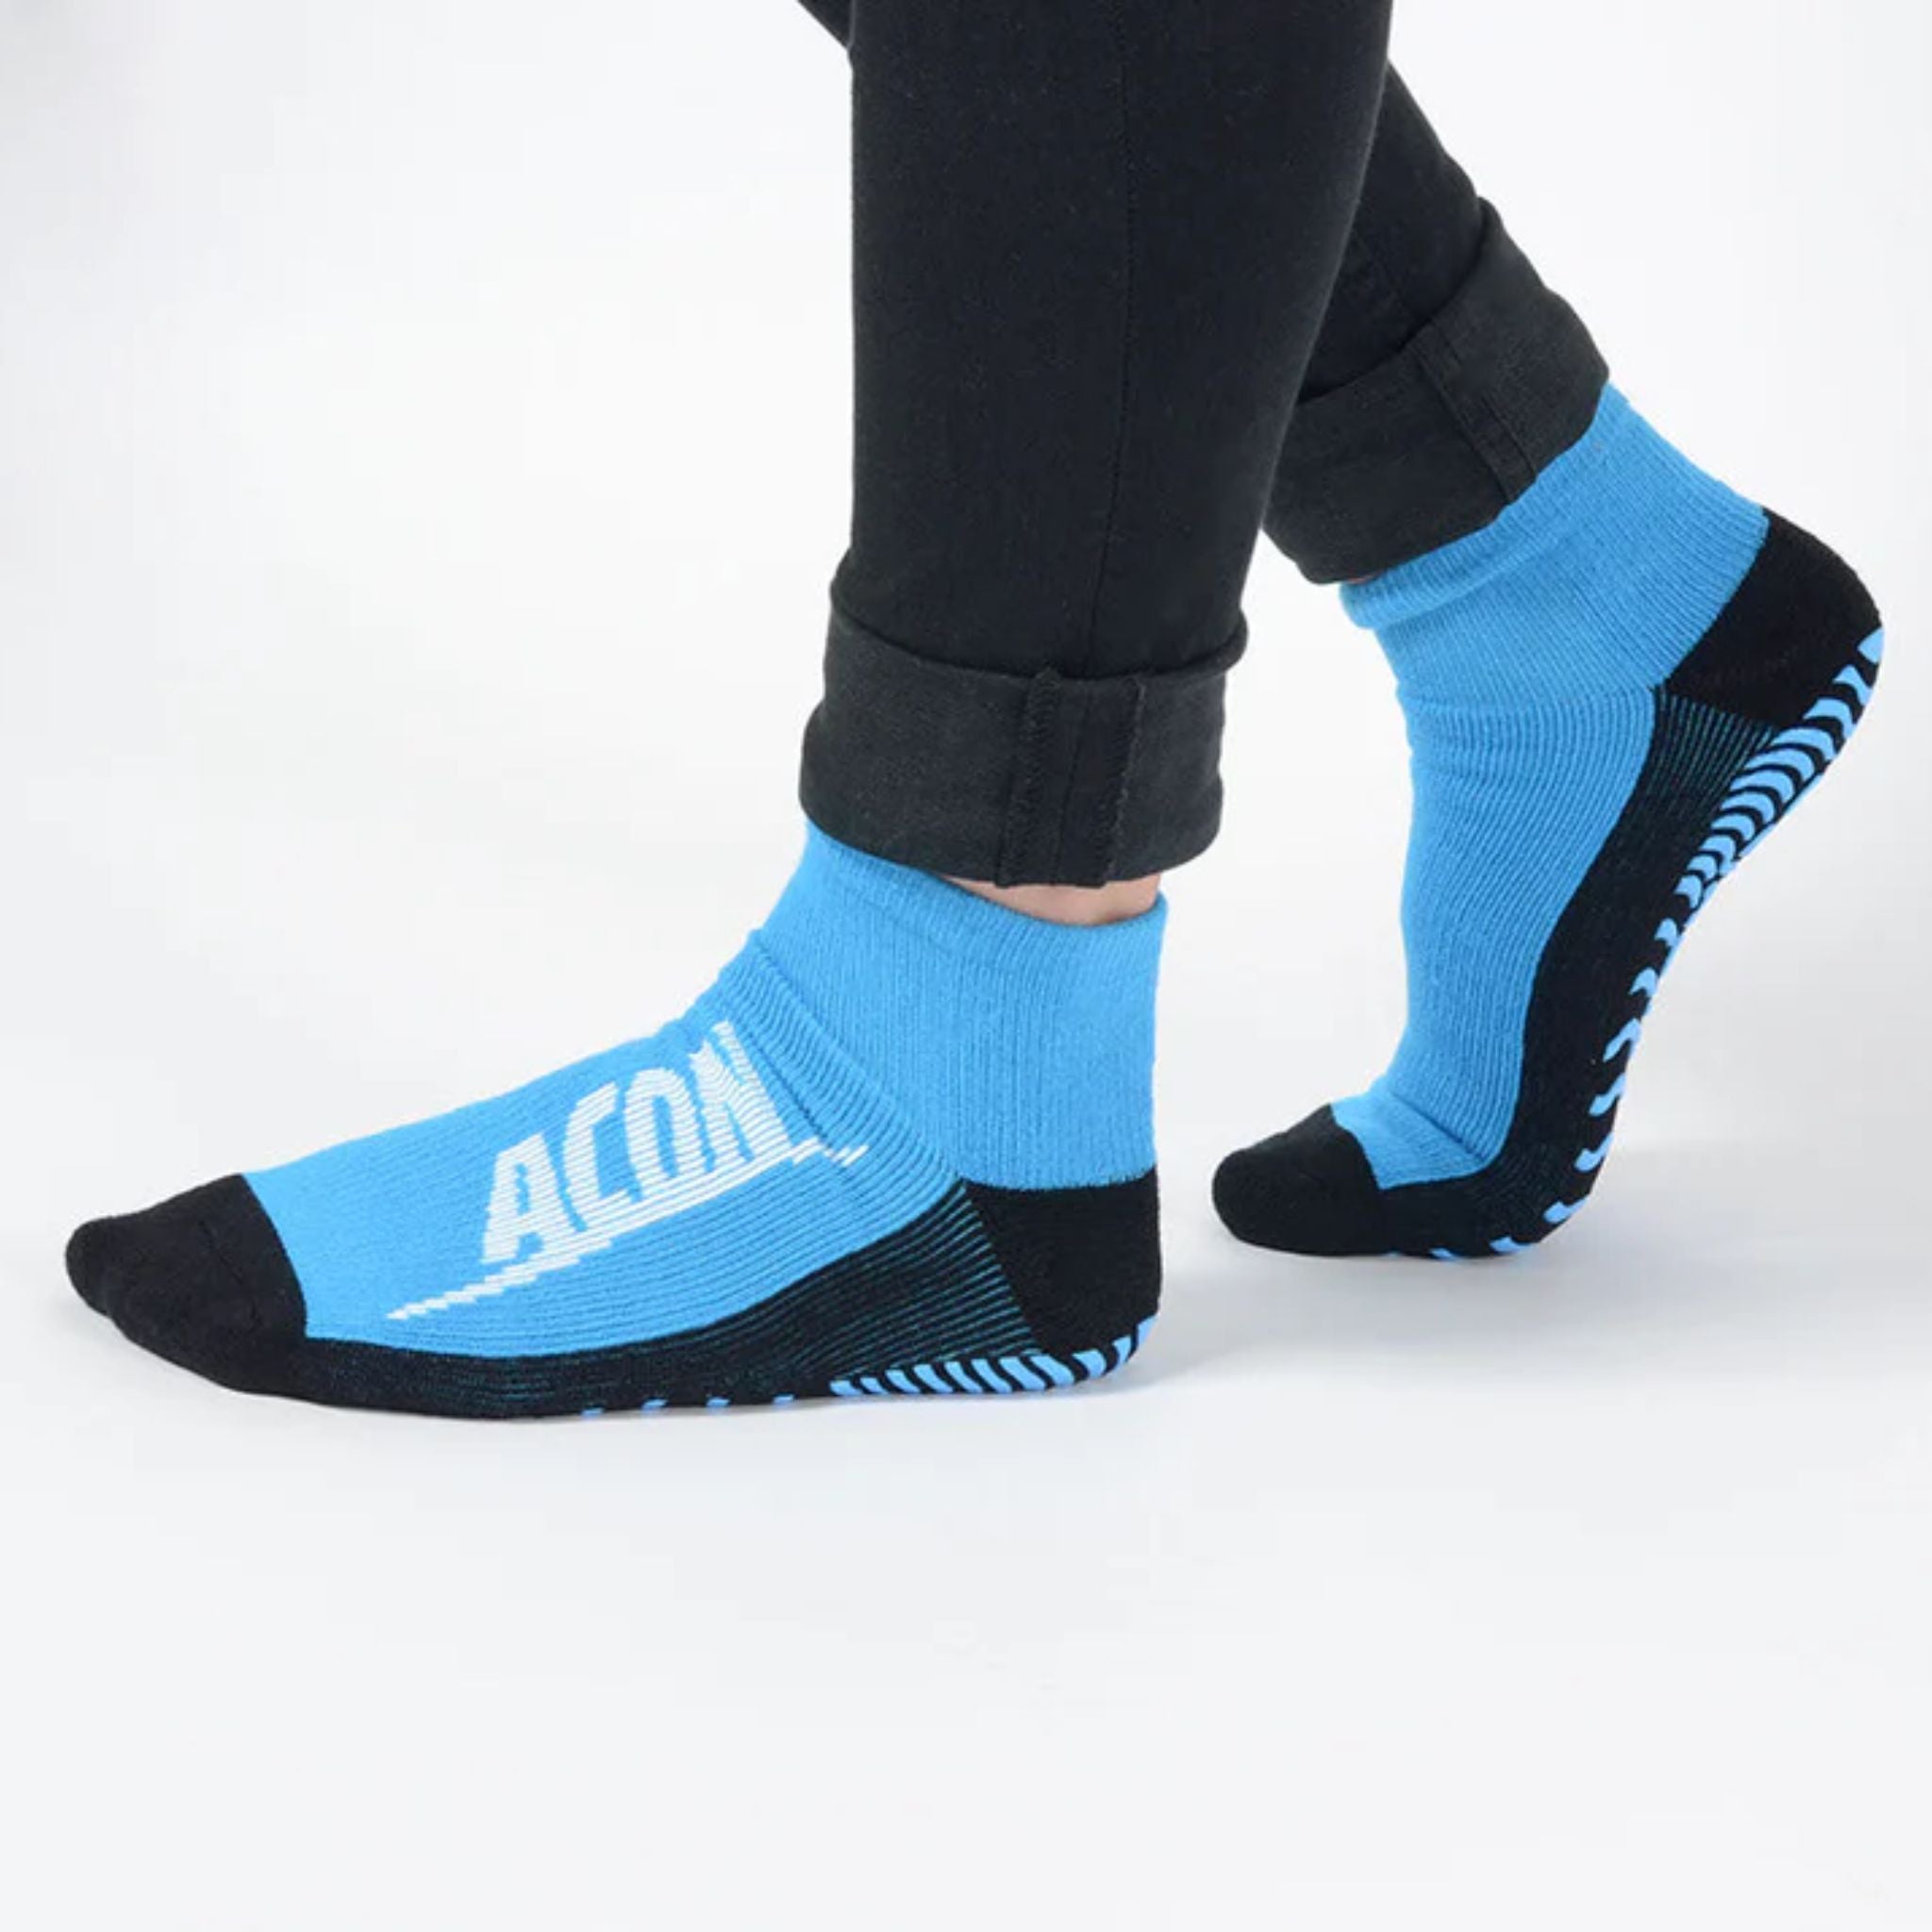 Trampolin Socken von Acon